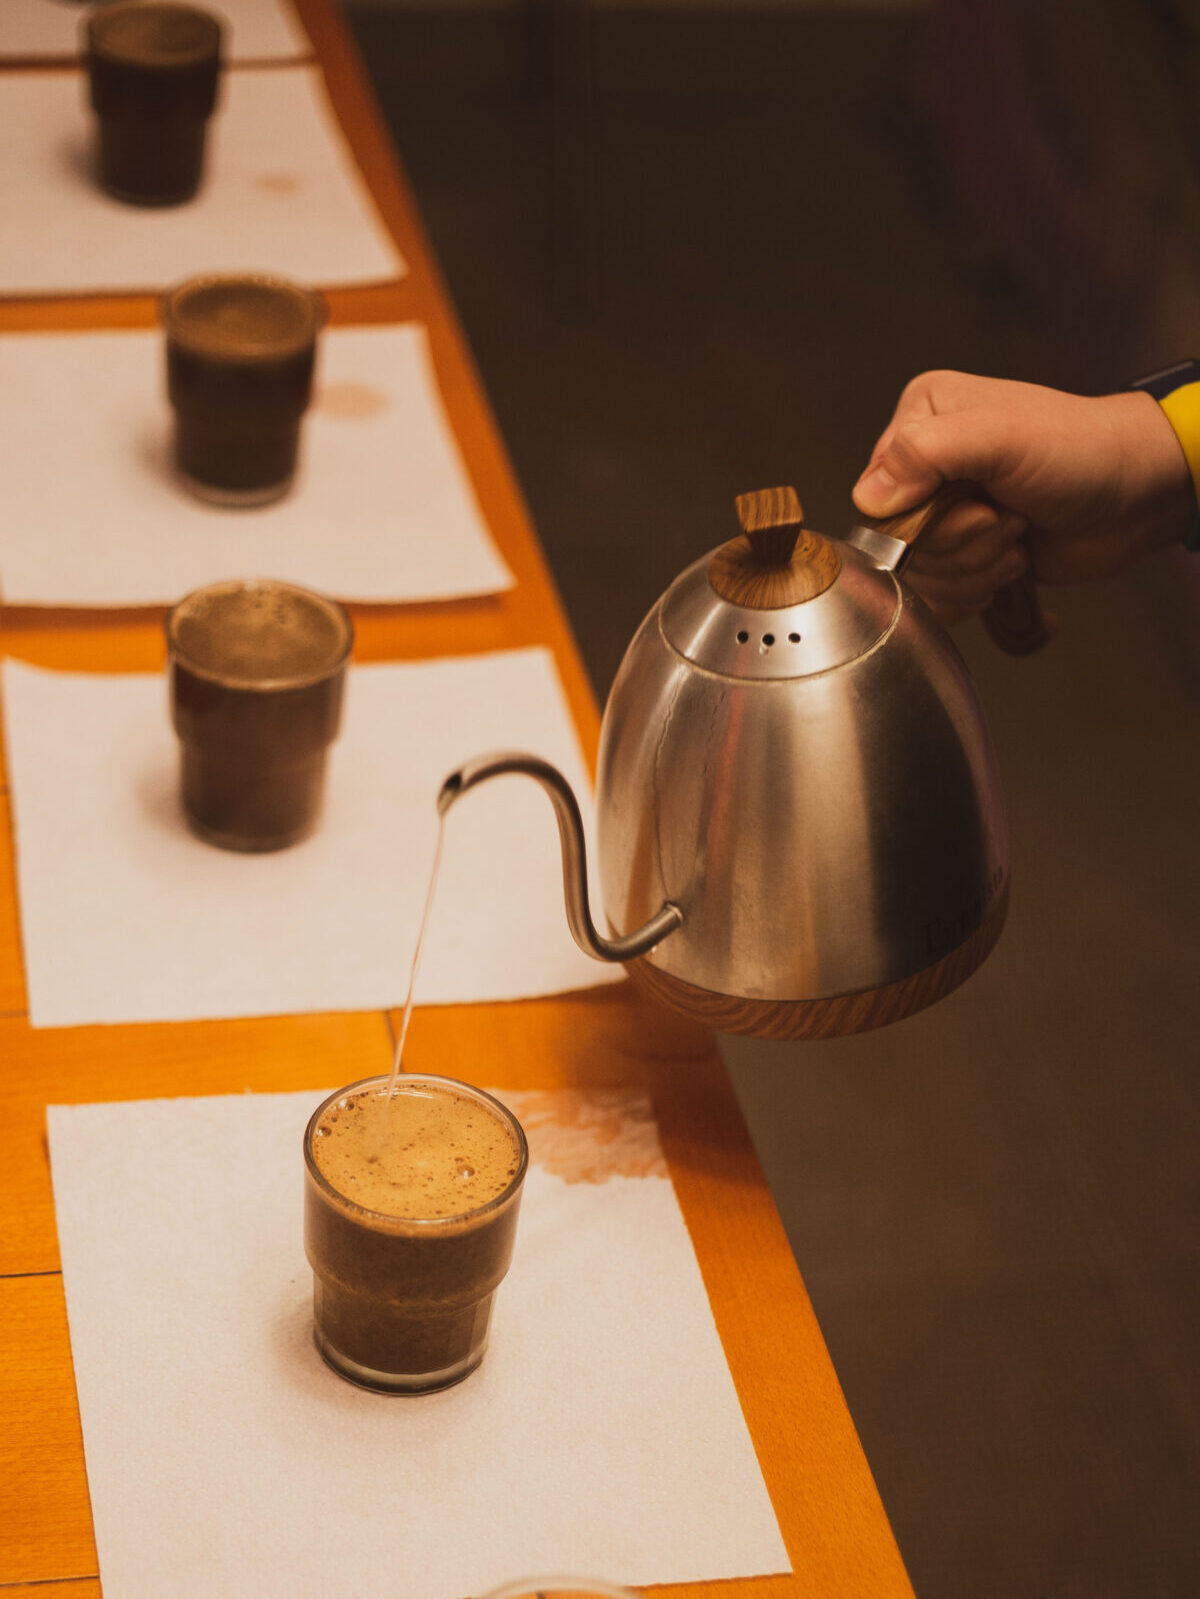 Tangan menuang air panas dari cerek leher angsa ke atas serbuk kopi ke dalam cawan kaca jernih.